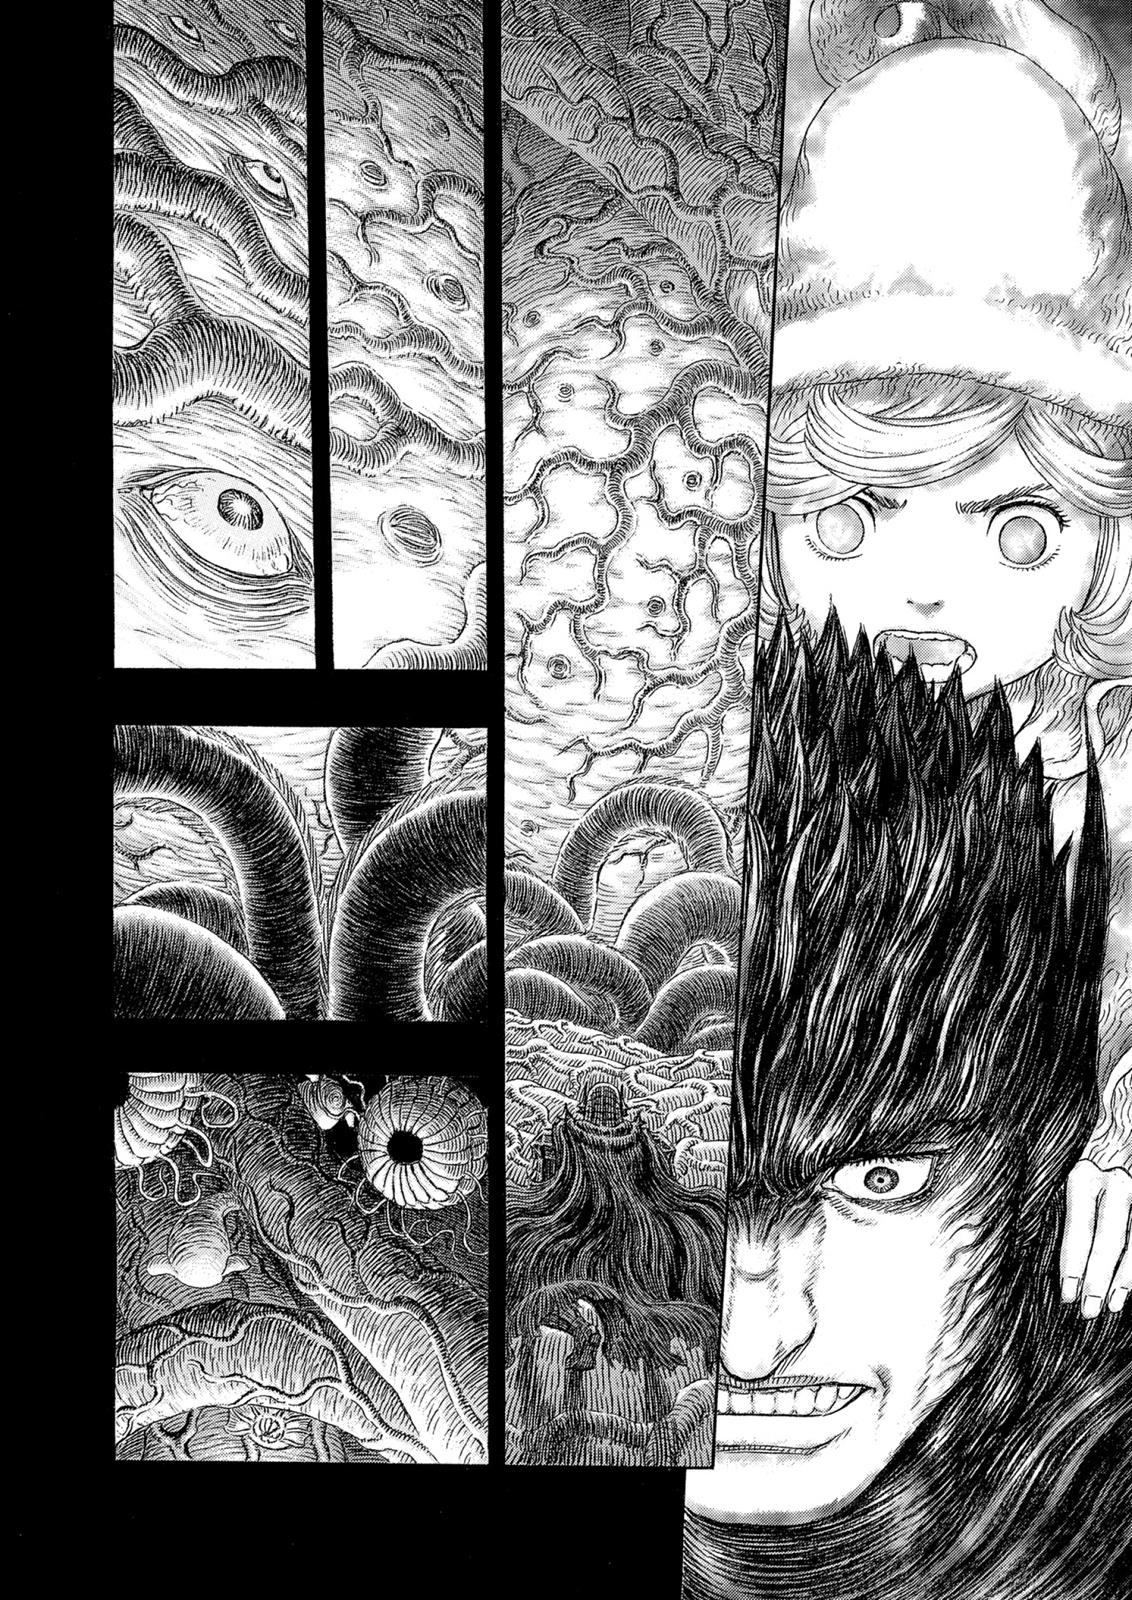 Berserk Manga Chapter 322 image 17